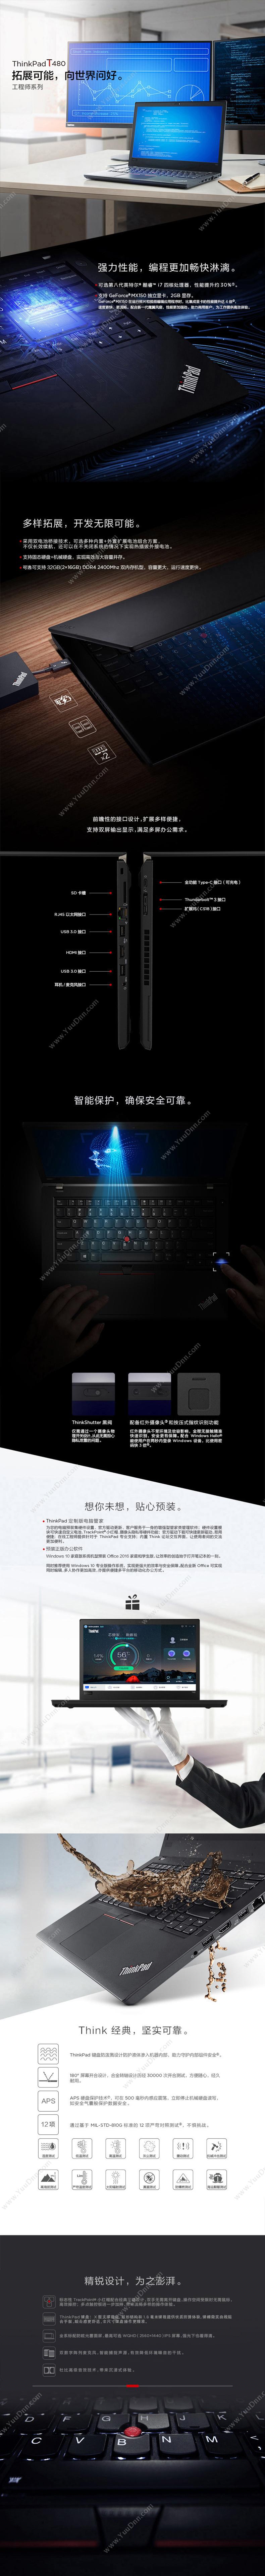 联想 Lenovo T480 i7-8550U8G1TB+128G2G独显W10H1Y（黑） 笔记本